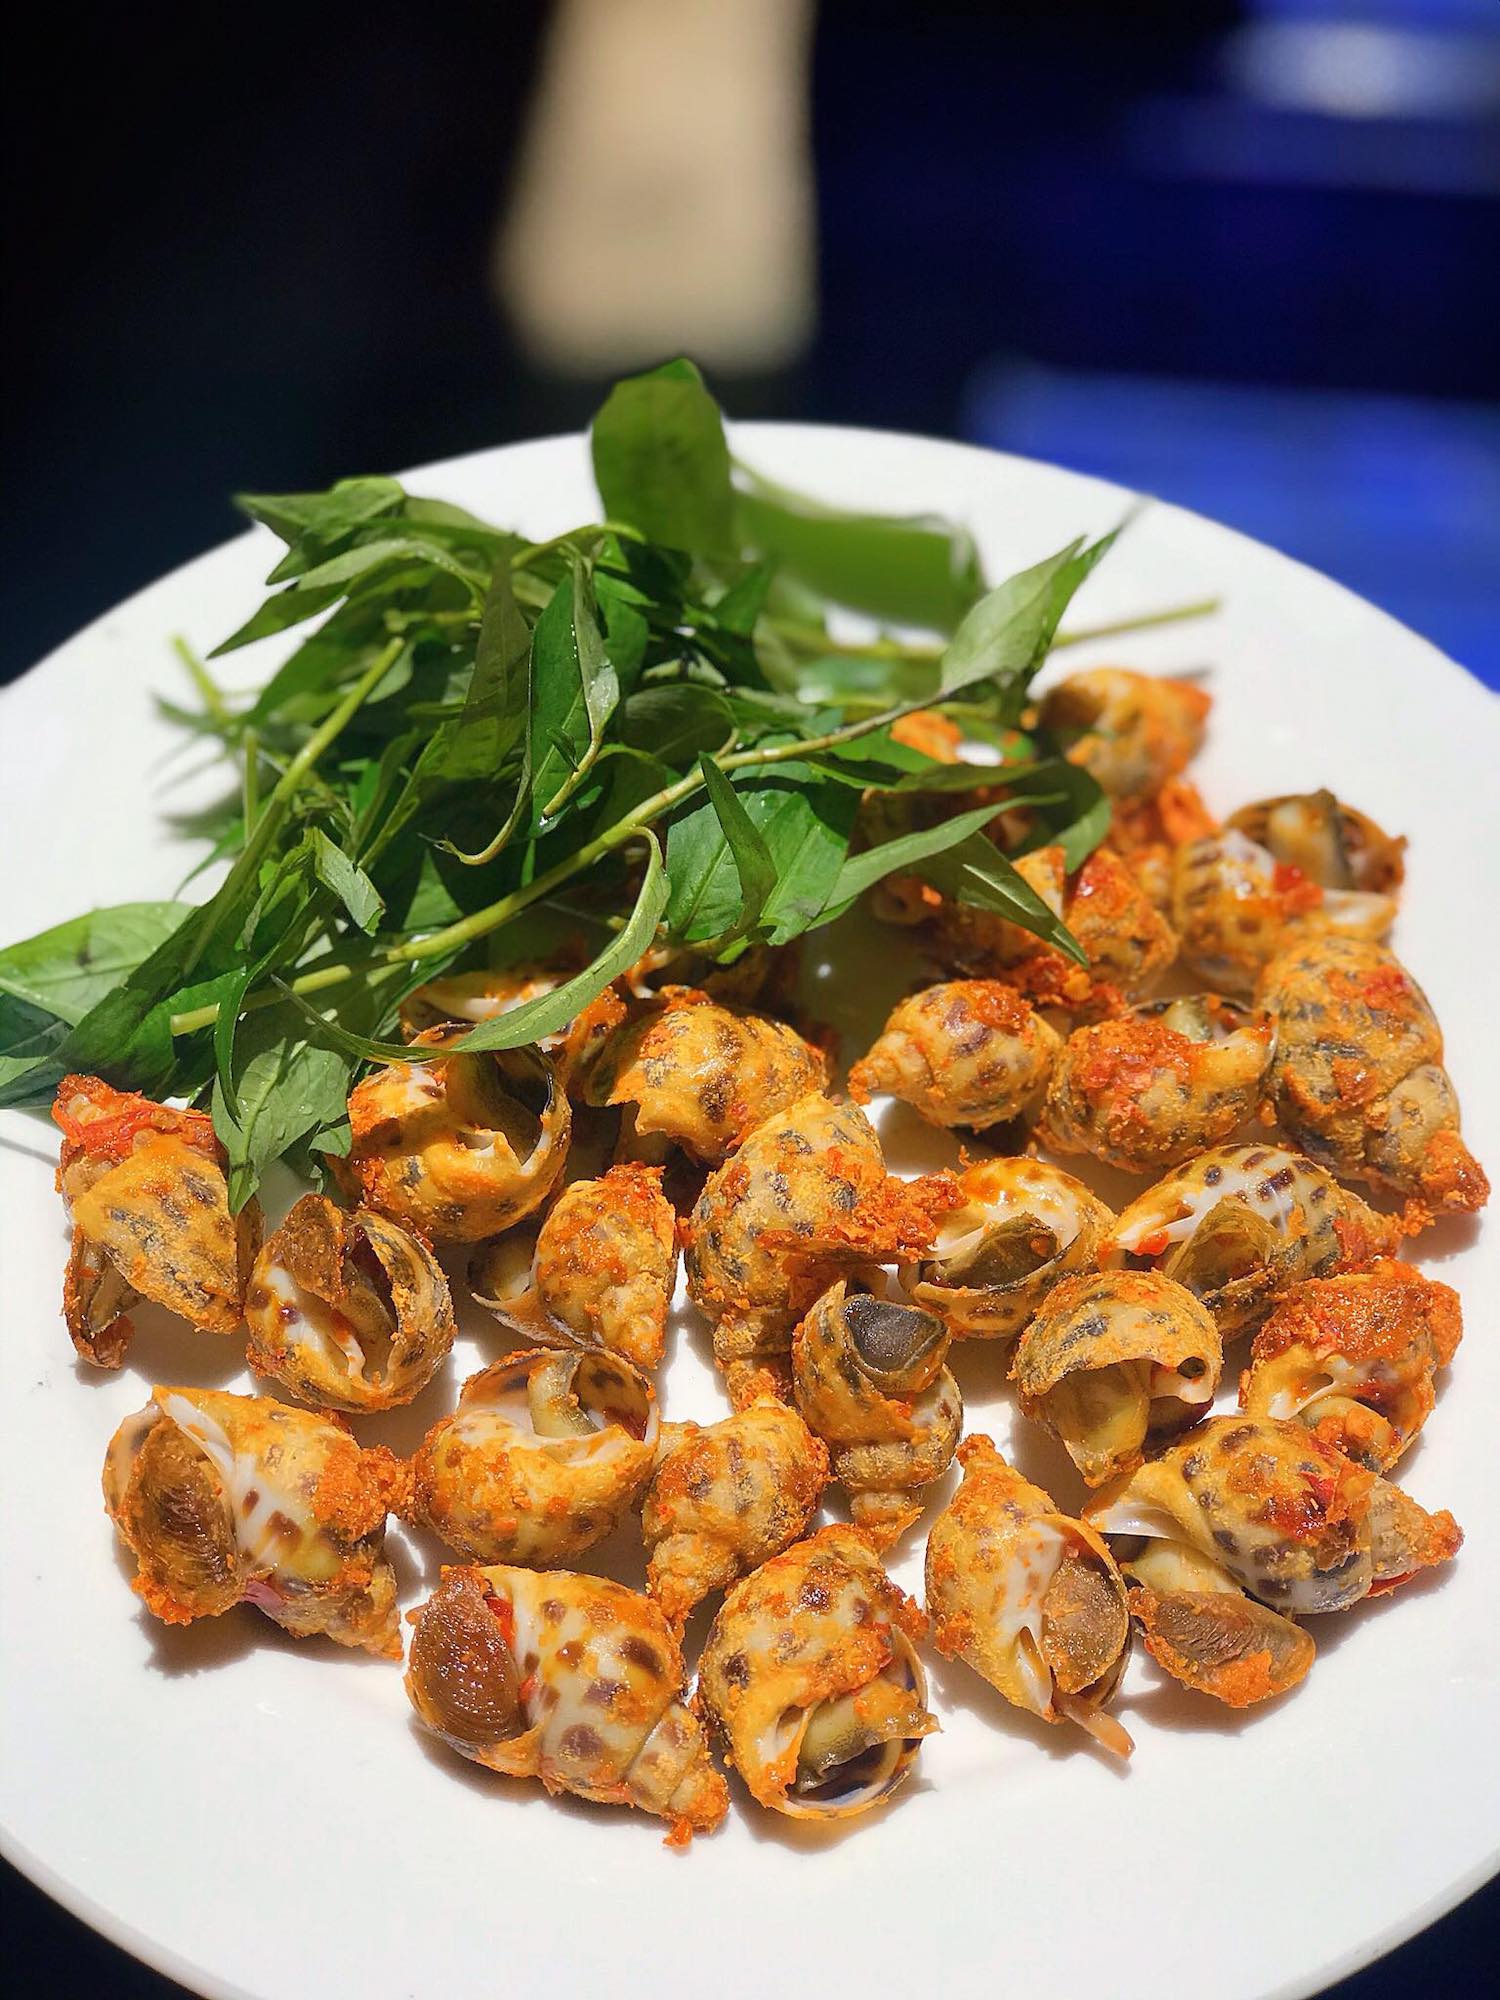 Nhà hàng Quang Anh - Vua cua Ô Loan Phú Yên với các món hải sản thơm ngon, 11